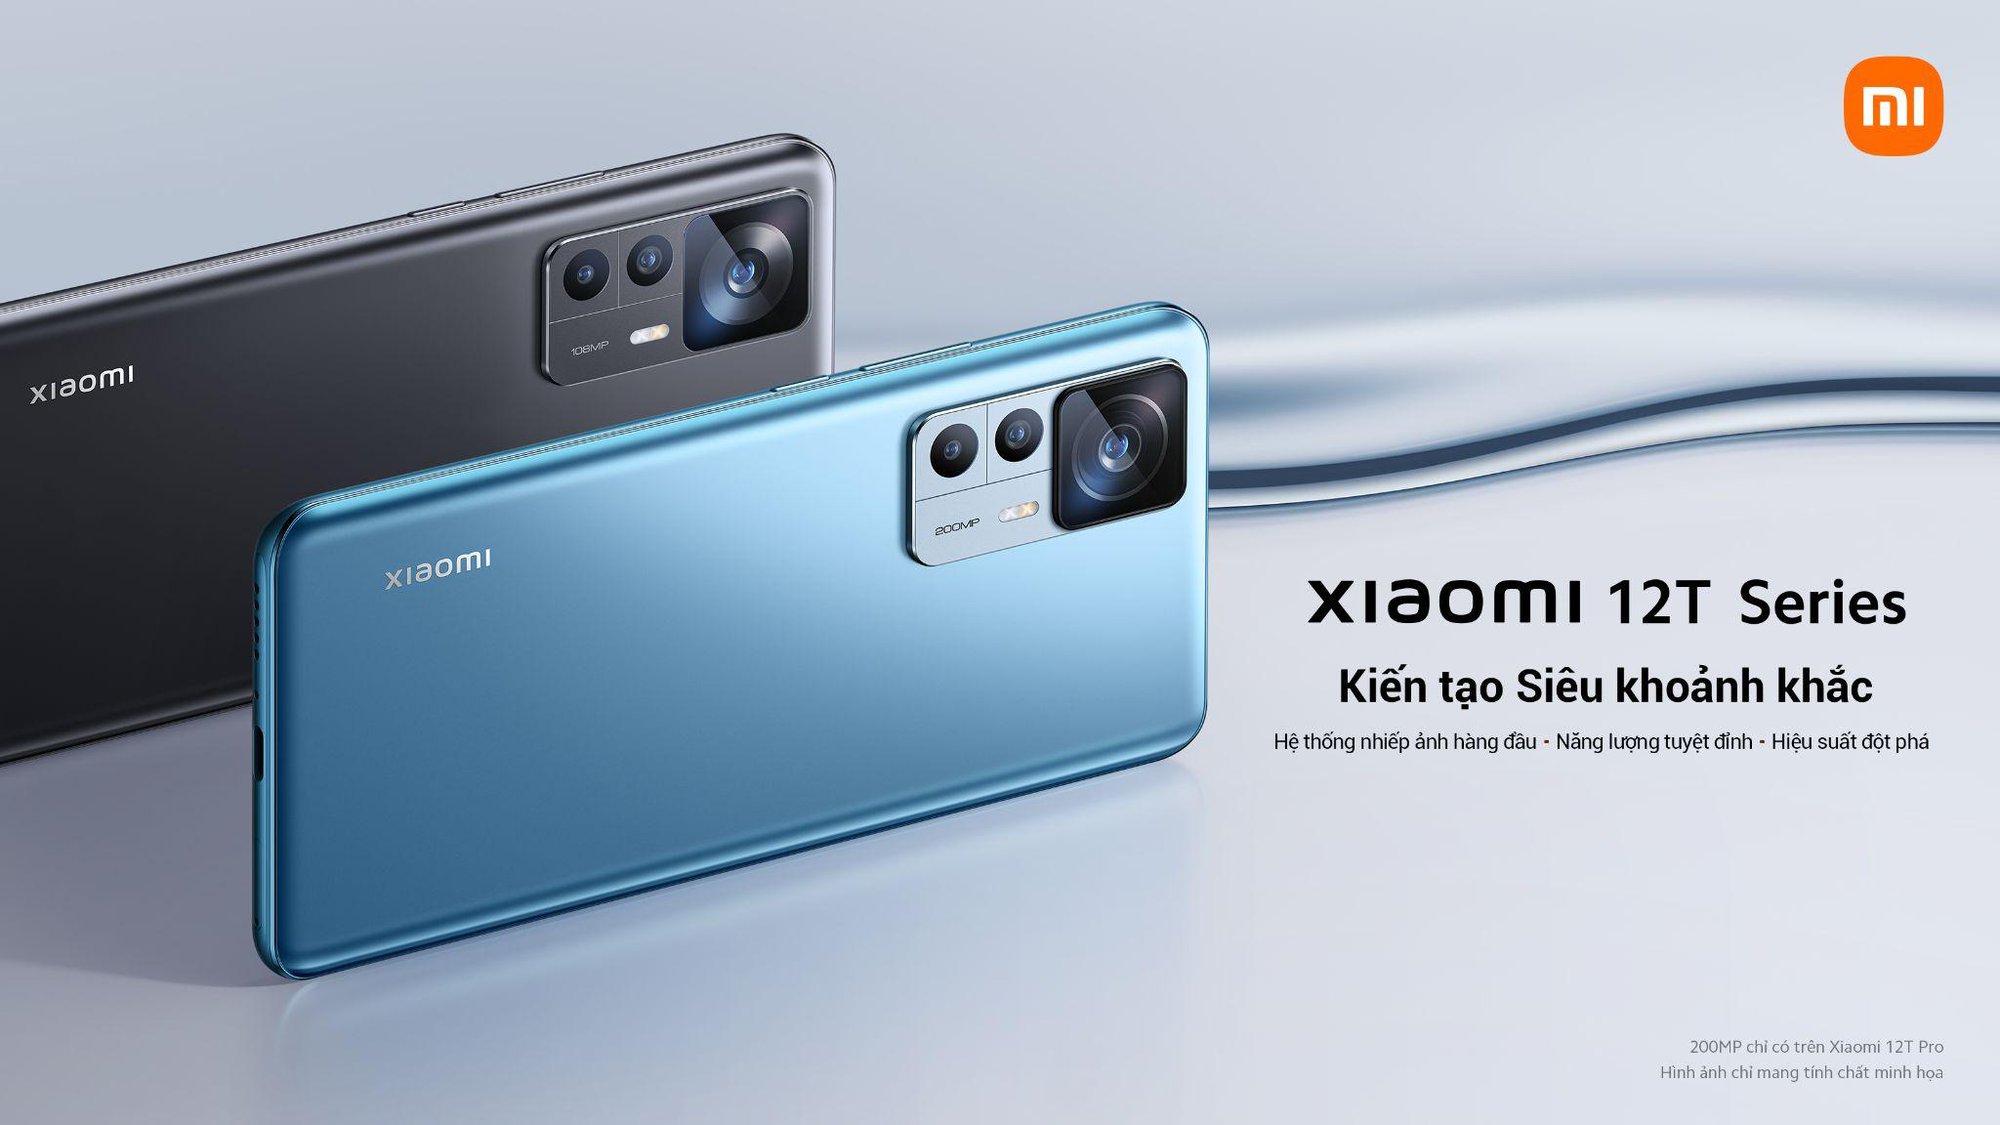 Xiaomi 12T Series sở hữu hệ thống nhiếp ảnh hàng đầu cùng năng lượng đột phá - ảnh 1